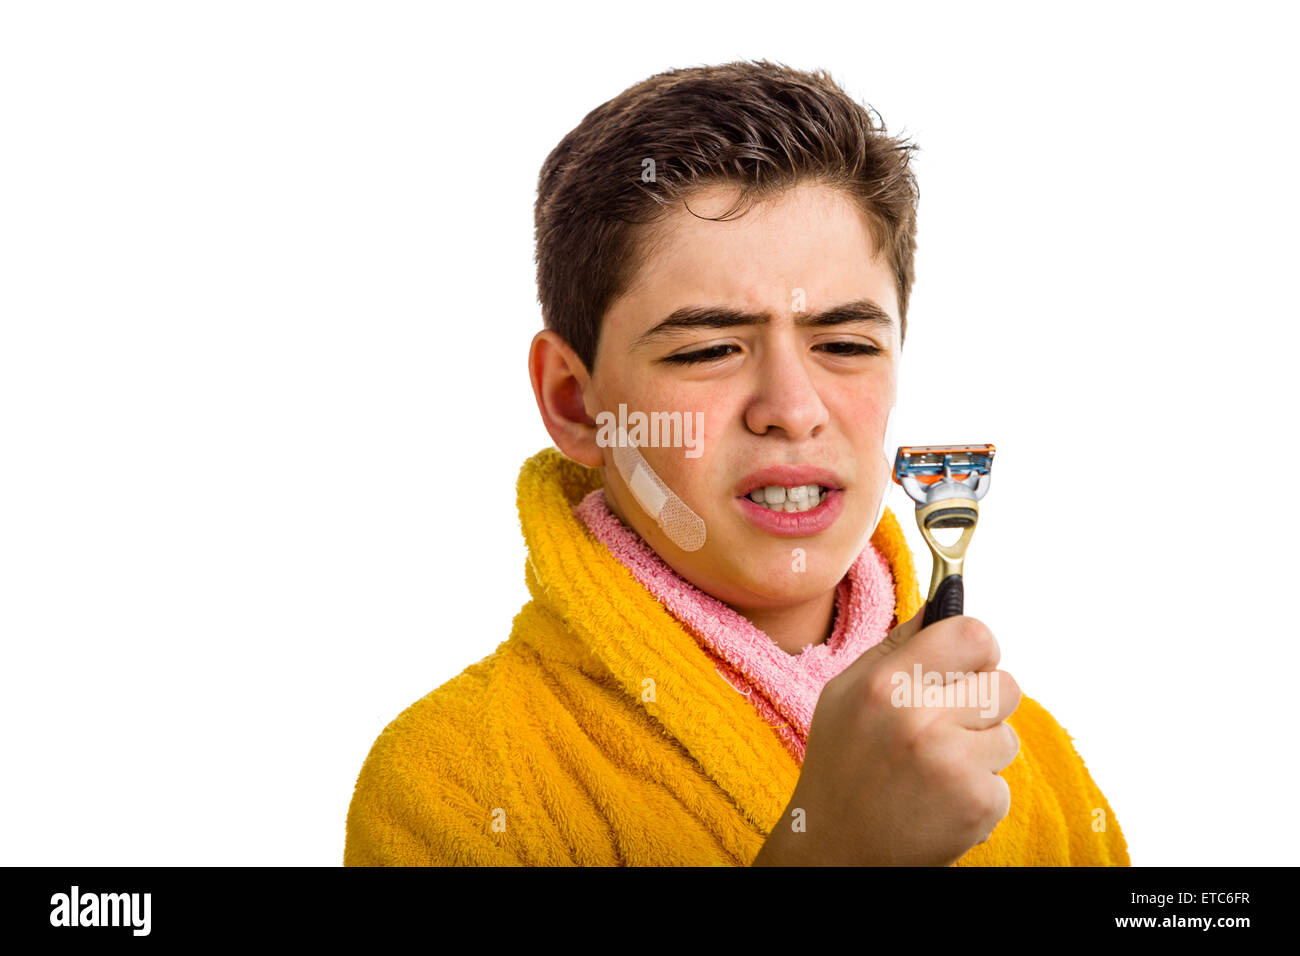 Ein spanischer Junge trägt einen gelben Bademantel mit einem rosa Handtuch um den Hals: er hat einige Flecken auf seinem Gesicht und starrt wütend auf das Rasiermesser er für die Rasur verwendet Stockfoto